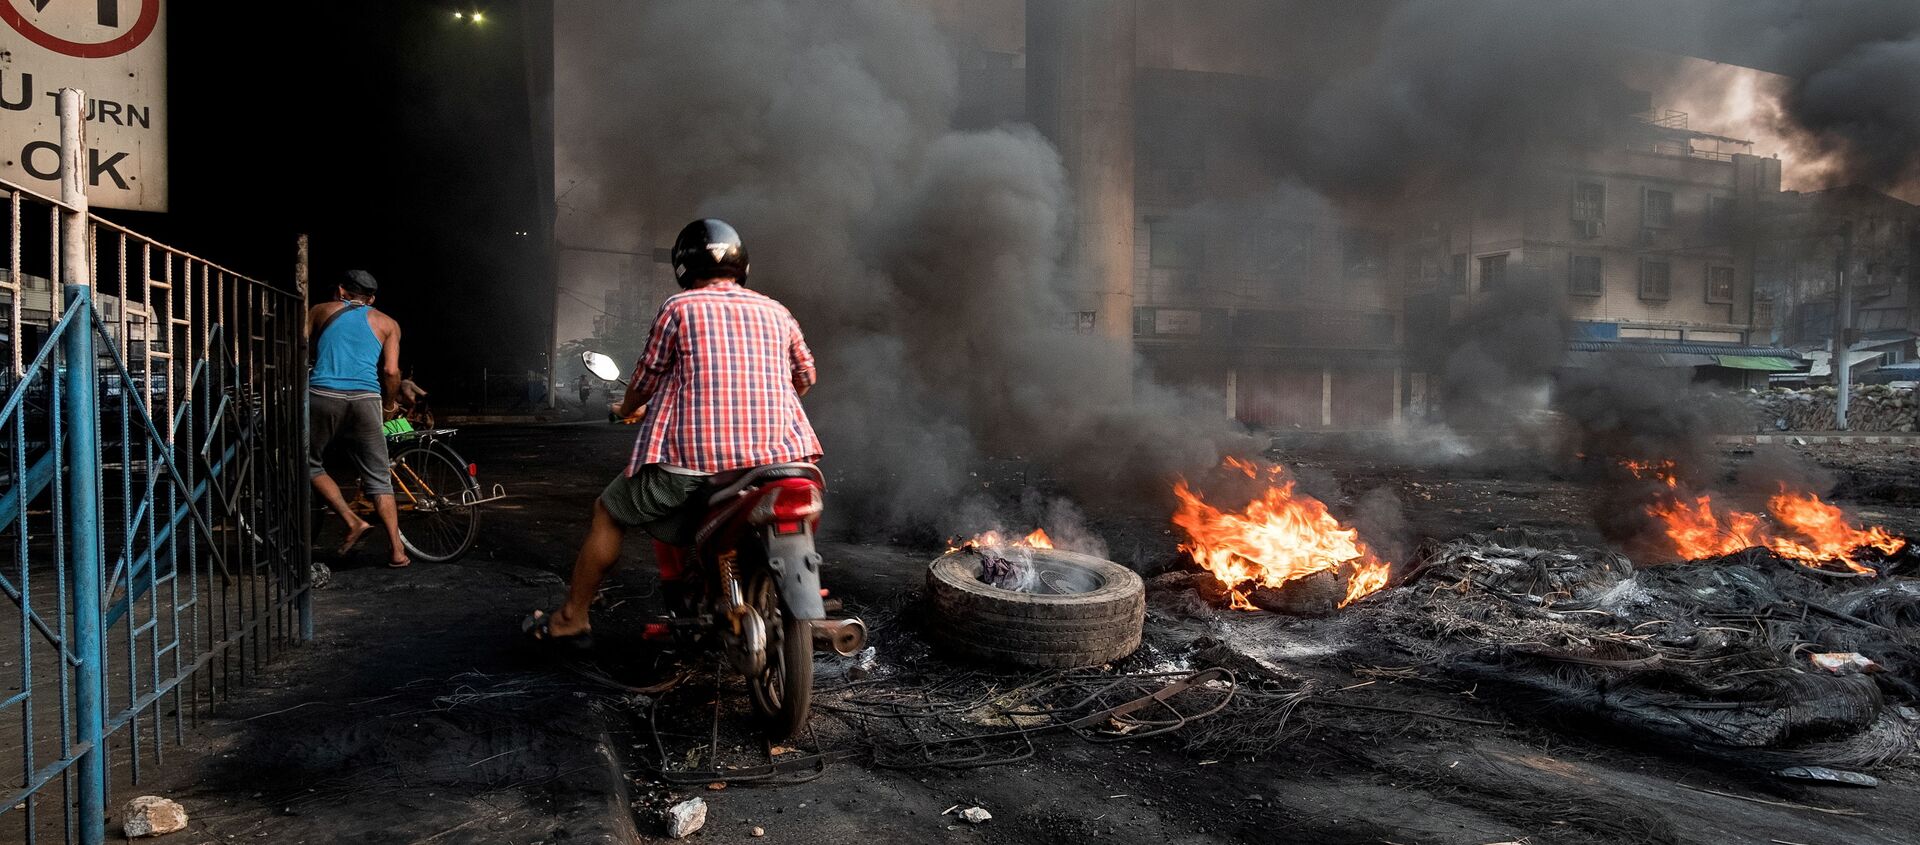 Khói bốc lên từ lốp xe đang cháy bốc lên tạo ra khói bao phủ trong một cuộc trấn áp tại Bayint Naung Junction ở Yangon, Myanmar ngày 16 tháng 3 năm 2021, trong bức ảnh do Reuters thu được. - Sputnik Việt Nam, 1920, 04.05.2021